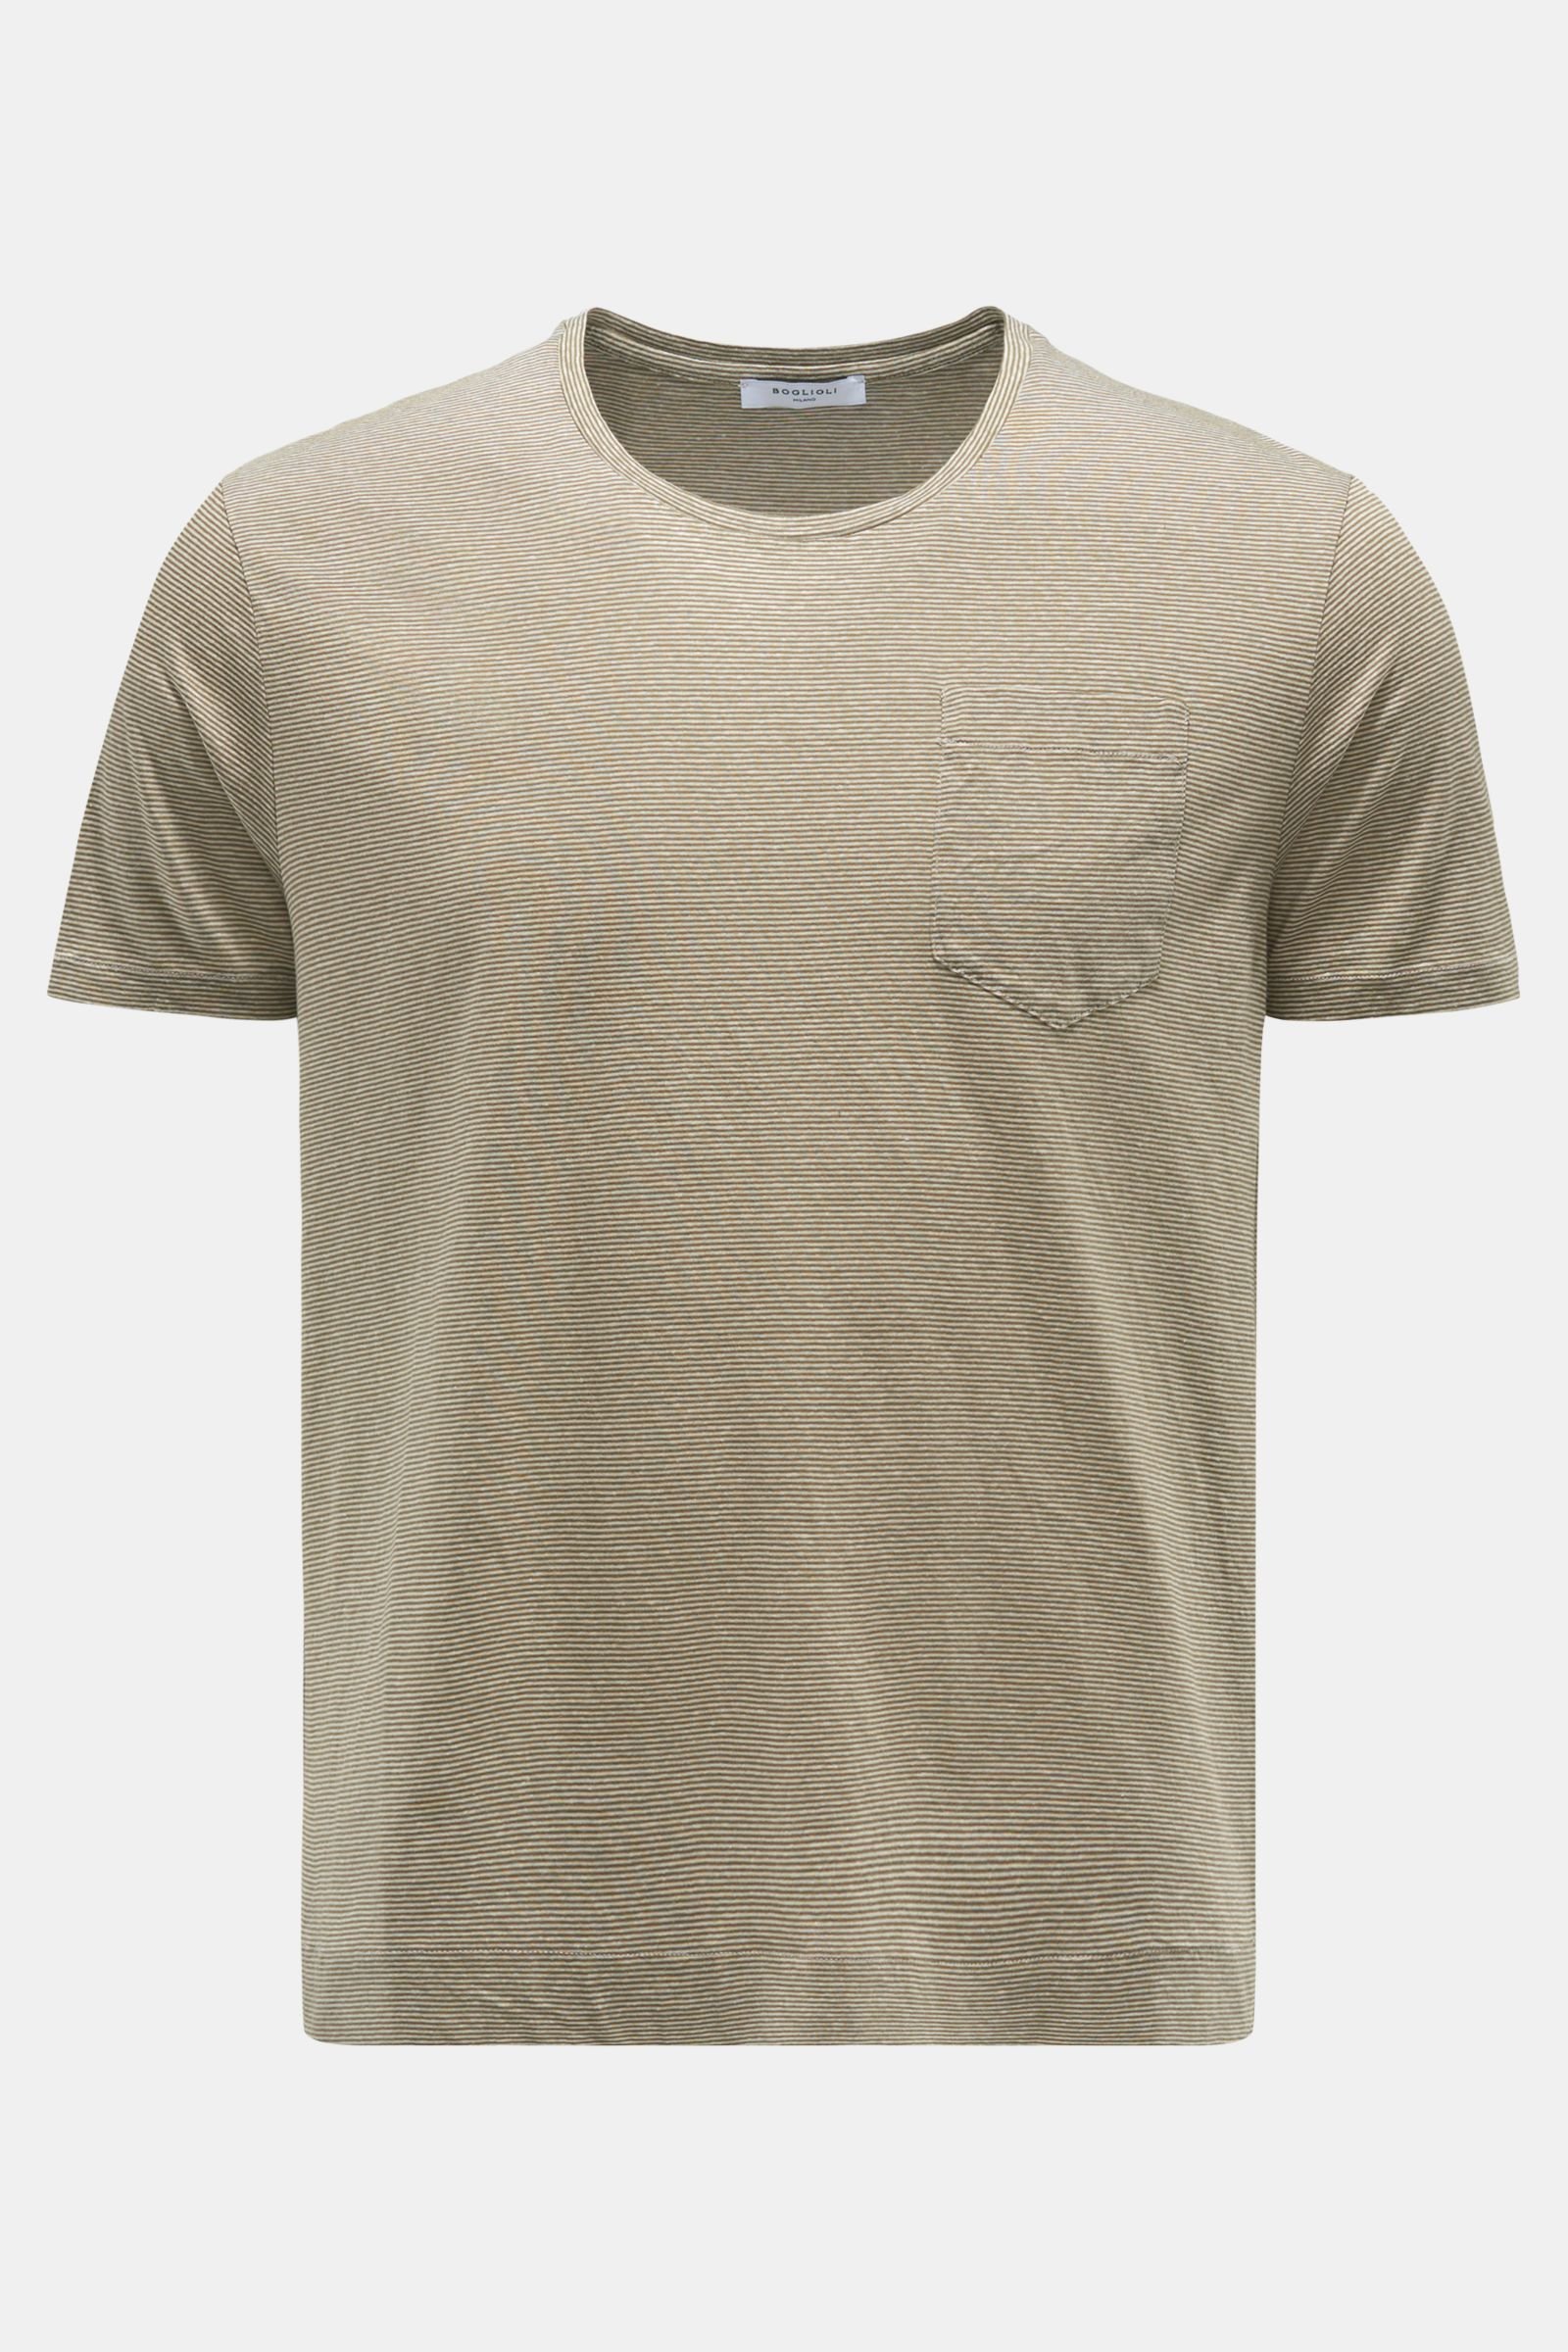 Rundhals-T-Shirt oliv/weiß gestreift